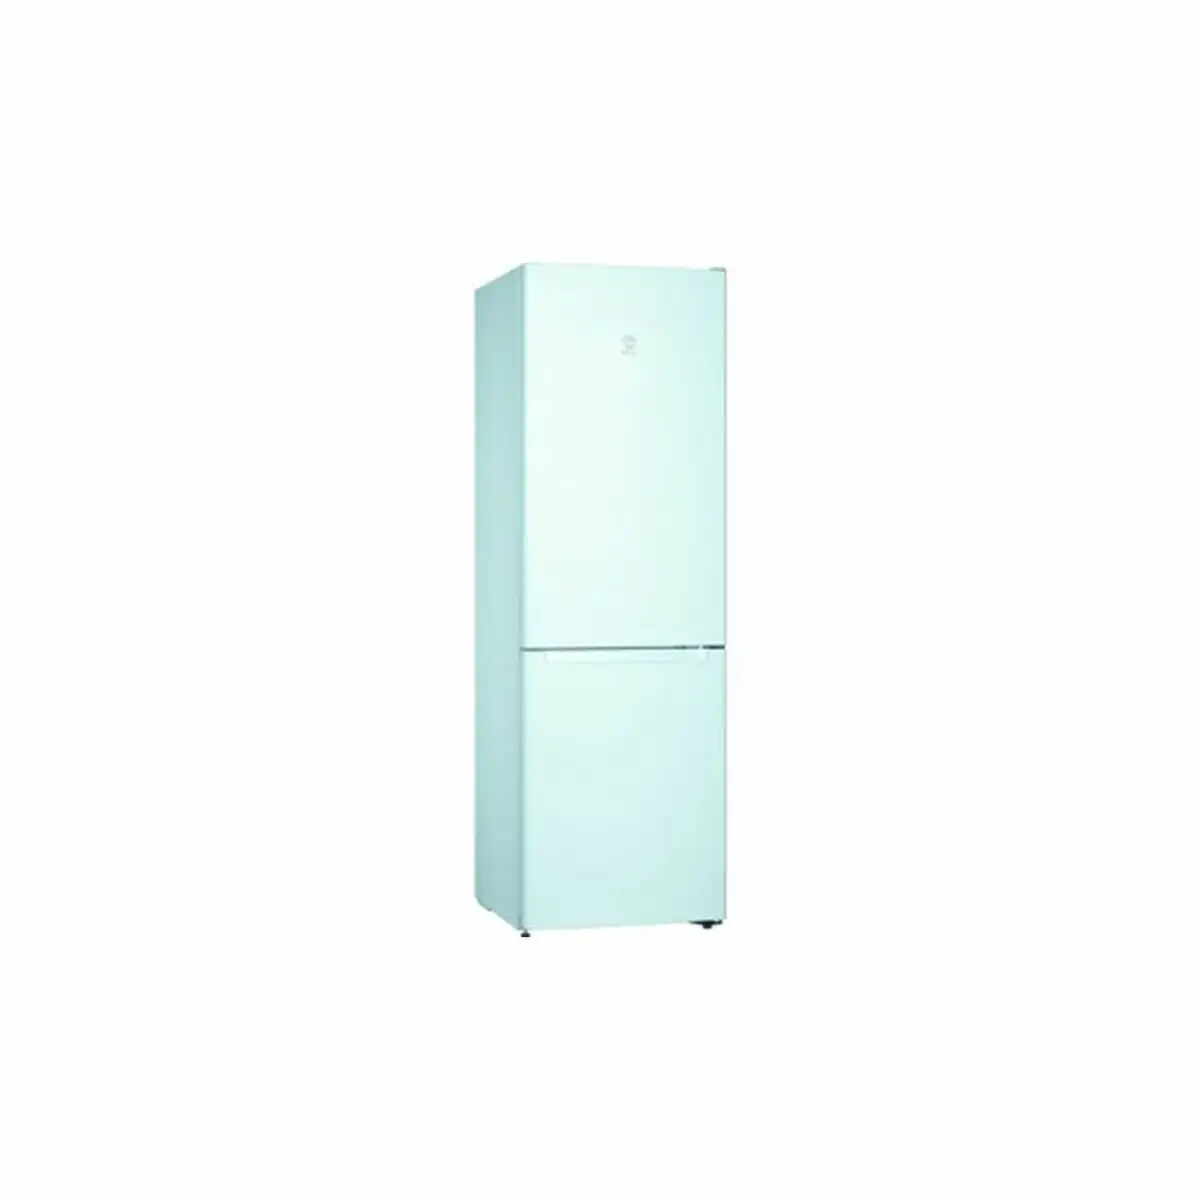 Refrigerateur combine balay 3kfe561wi blanc 186 x 60 cm _2243. DIAYTAR SENEGAL - Là où Chaque Produit a son Propre Éclat. Explorez notre boutique en ligne et trouvez des articles qui ajoutent de la brillance à votre quotidien.